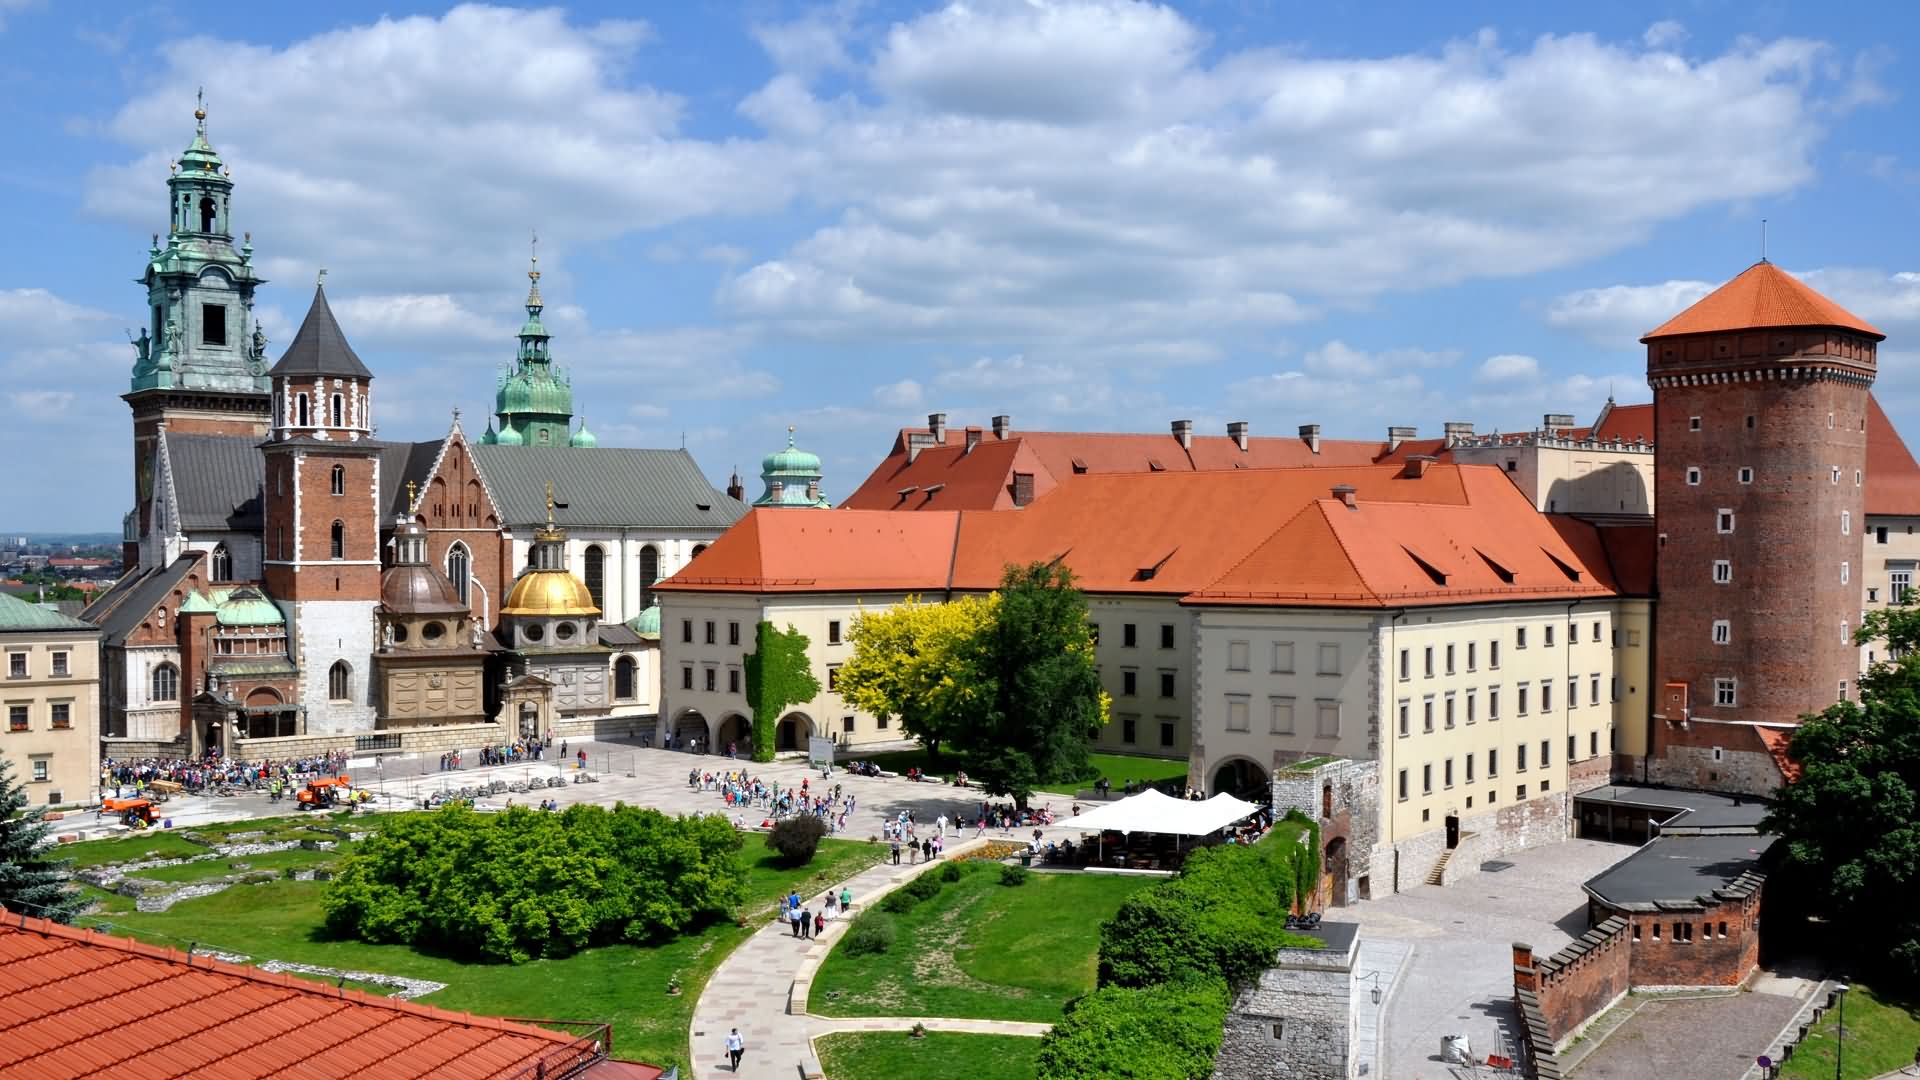 beautiful picture of the wawel castle in krakow